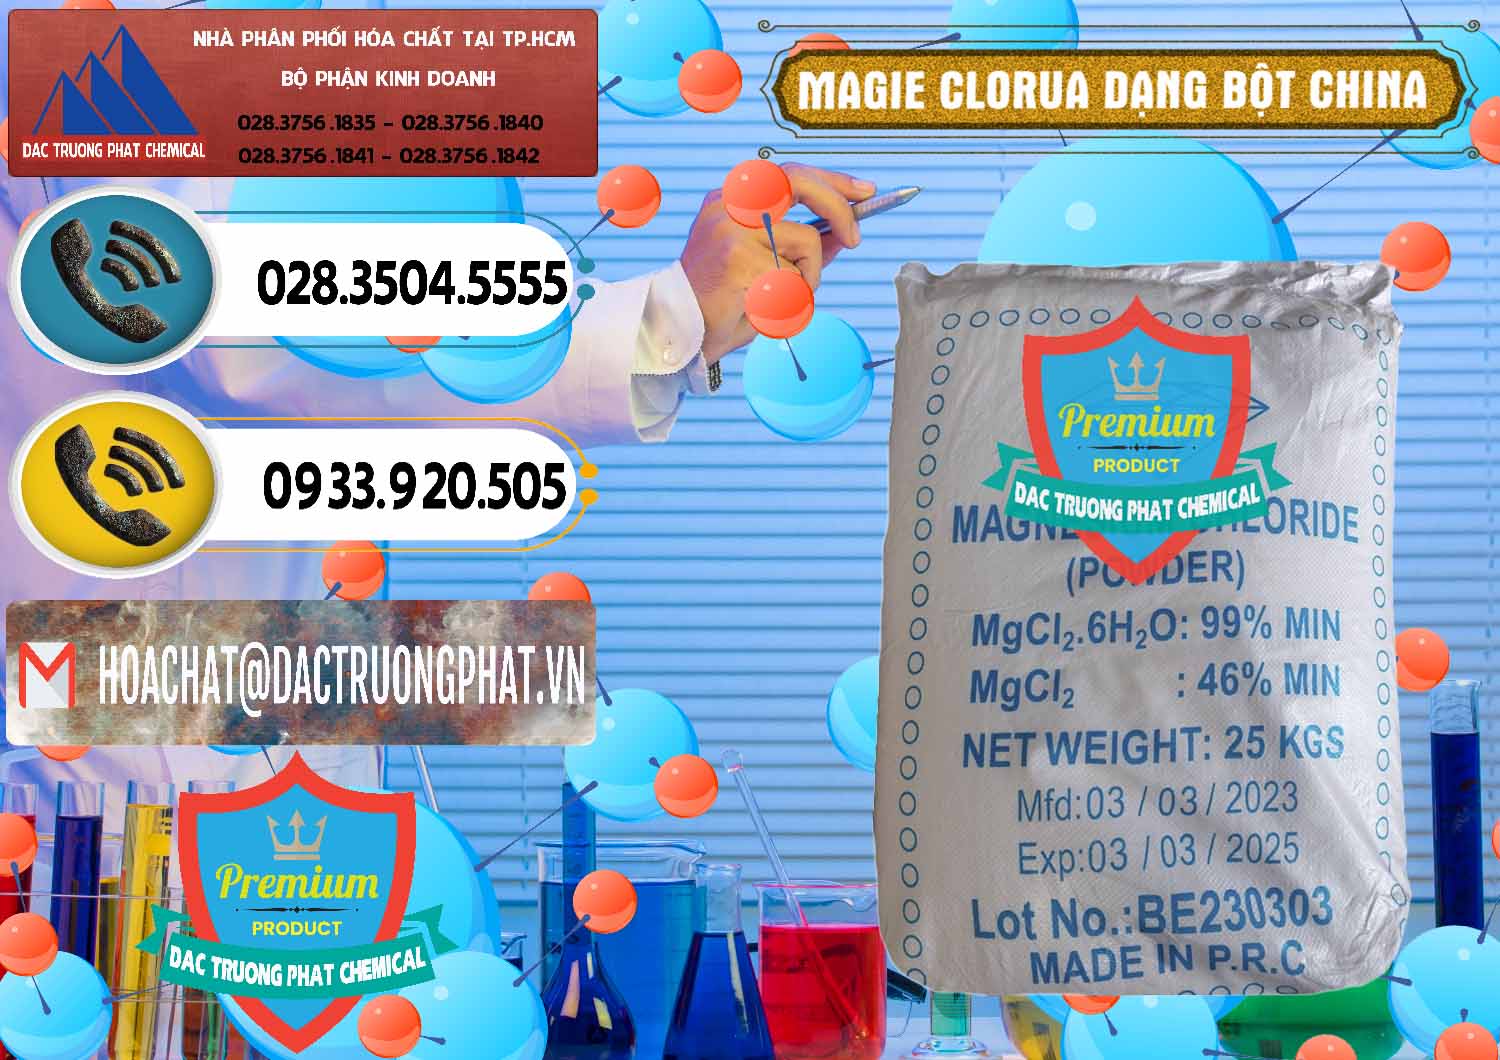 Công ty nhập khẩu - bán Magie Clorua – MGCL2 96% Dạng Bột Logo Kim Cương Trung Quốc China - 0387 - Nơi chuyên cung cấp ( nhập khẩu ) hóa chất tại TP.HCM - hoachatdetnhuom.vn